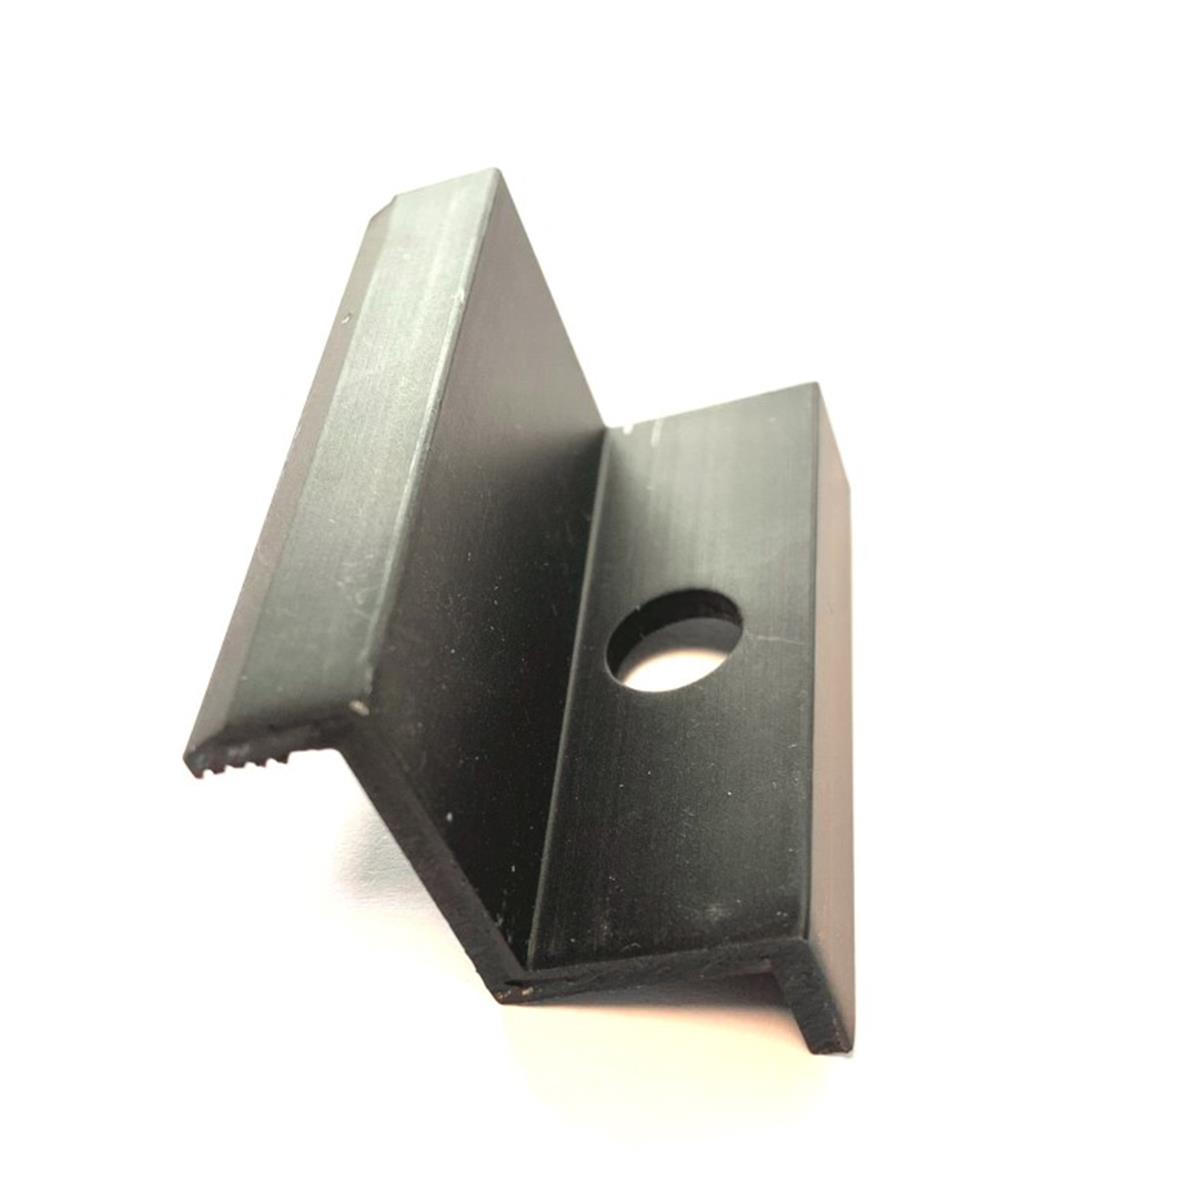 Collier d'extrémité noir 35mm pour cadre sur toit plat